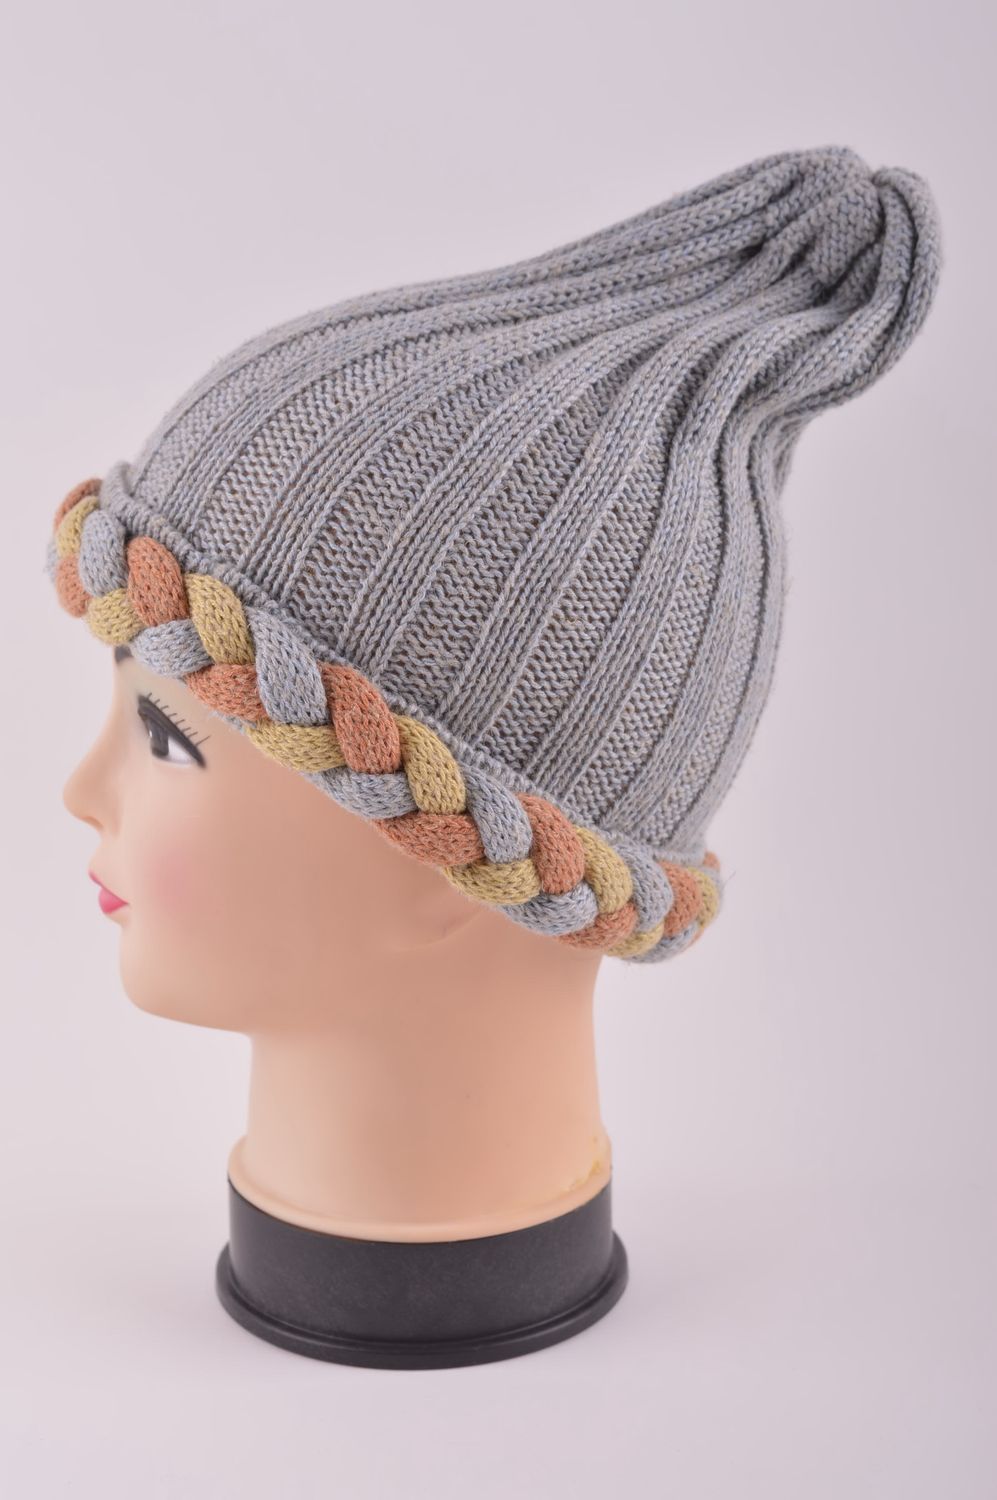 Handmade winter hat women hat knitted hat warm winter hat warm accessories photo 3